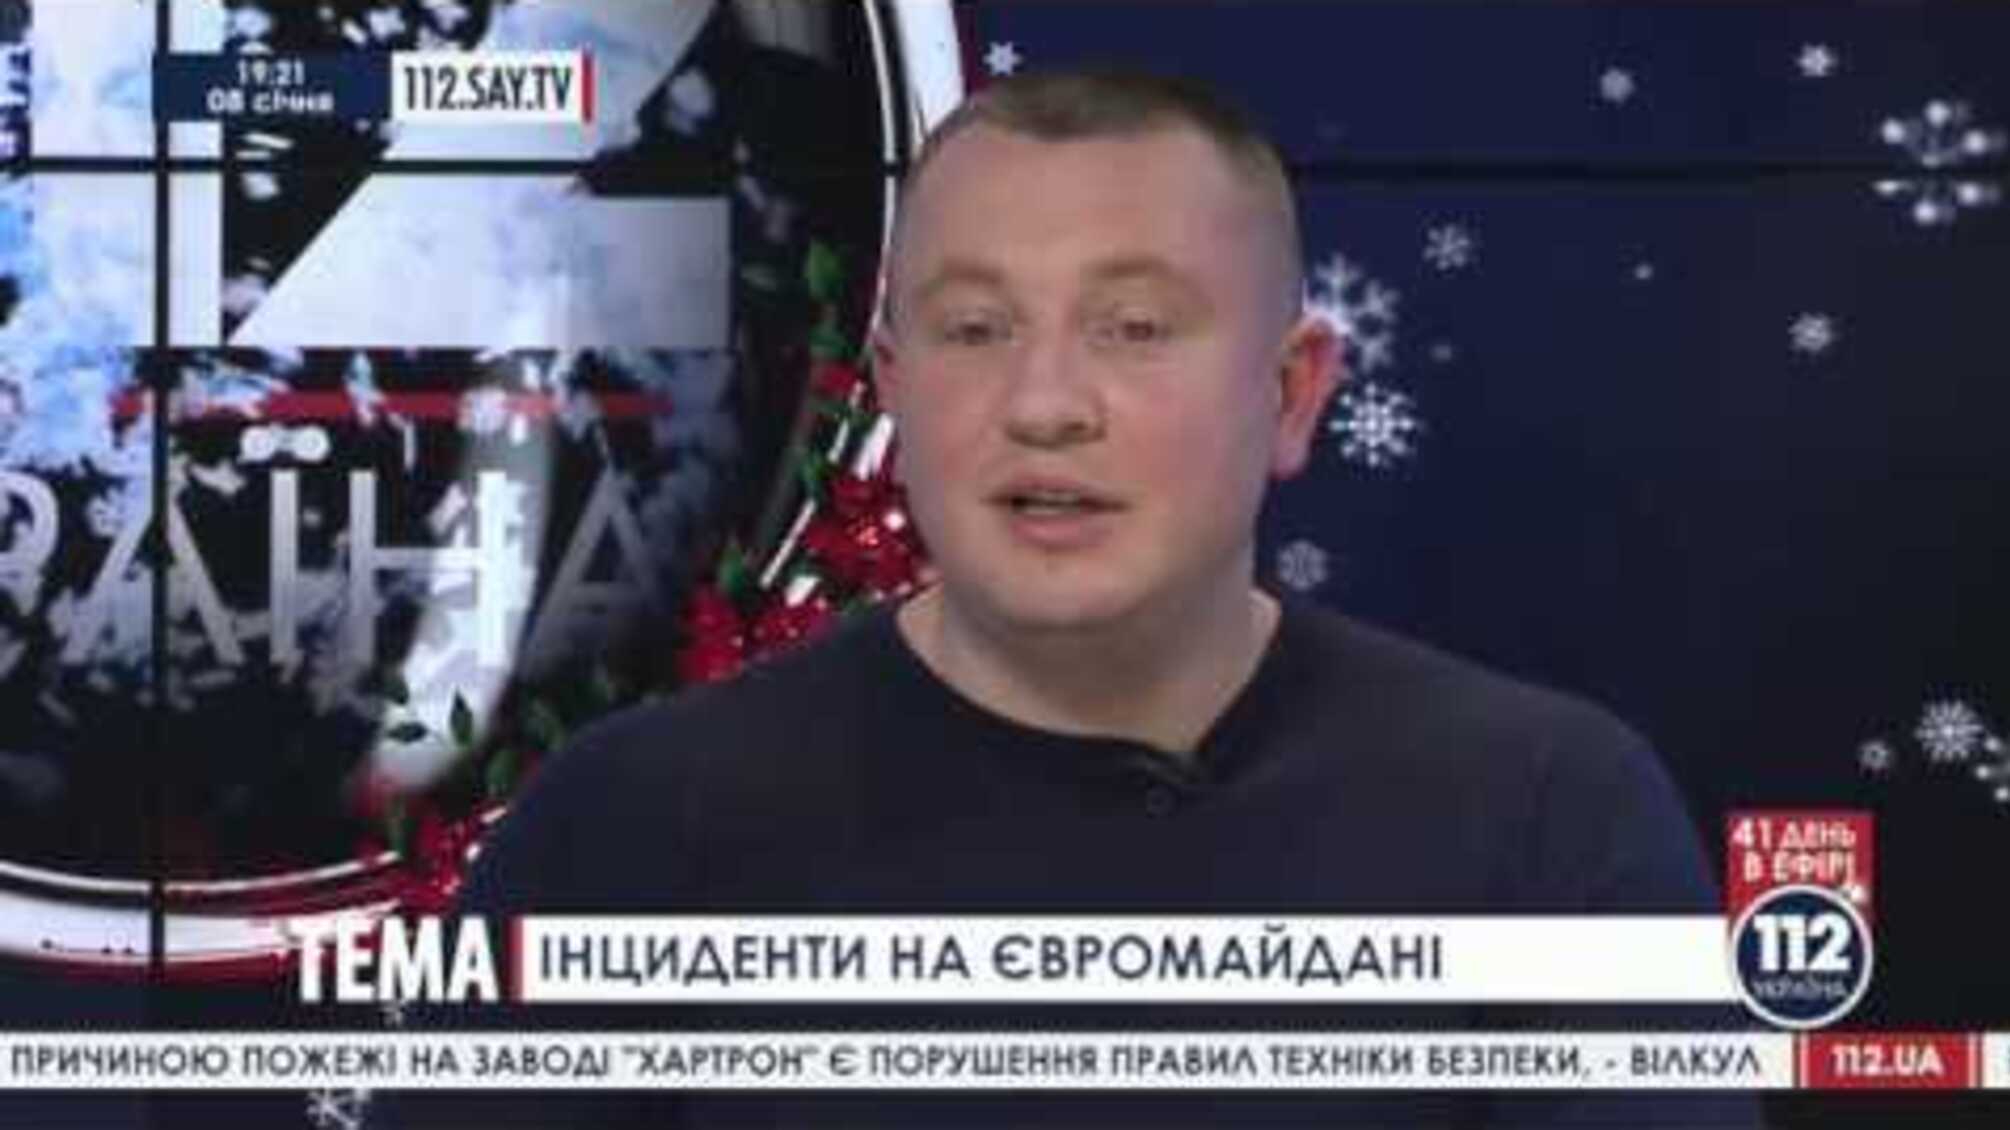 Разгонять Евромайдан назначили уголовника Евгения Жилина, причастного к убийствам